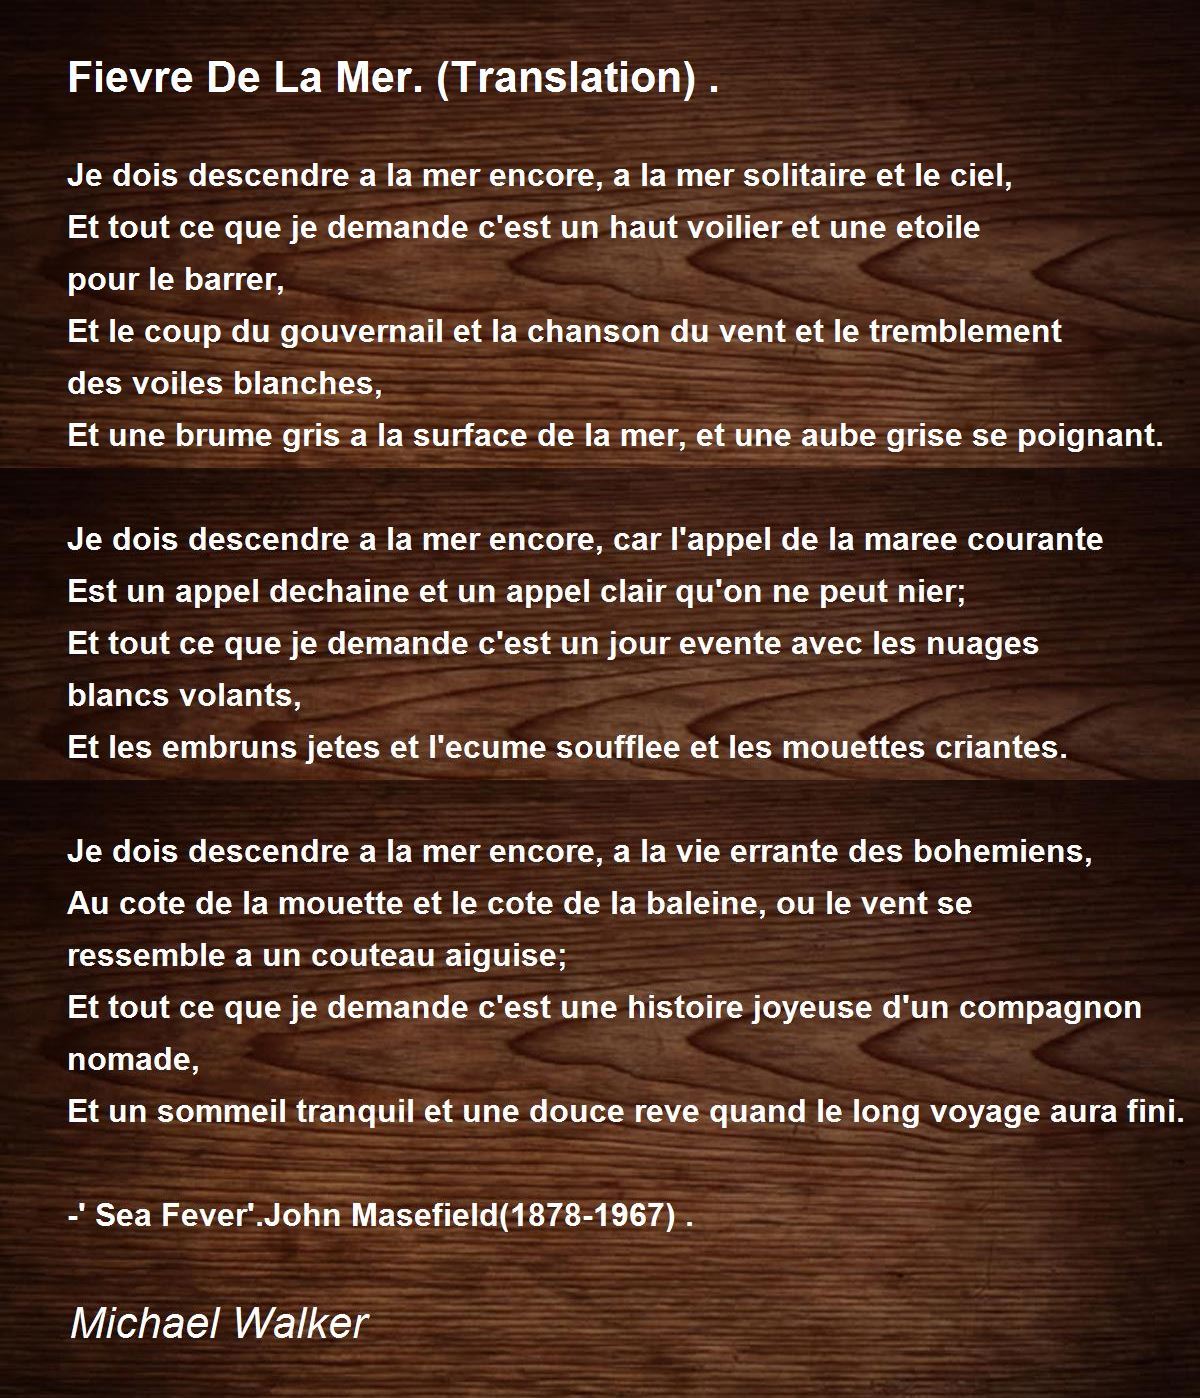 Fievre De La Mer Translation By Michael Walker Fievre De La Mer Translation Poem